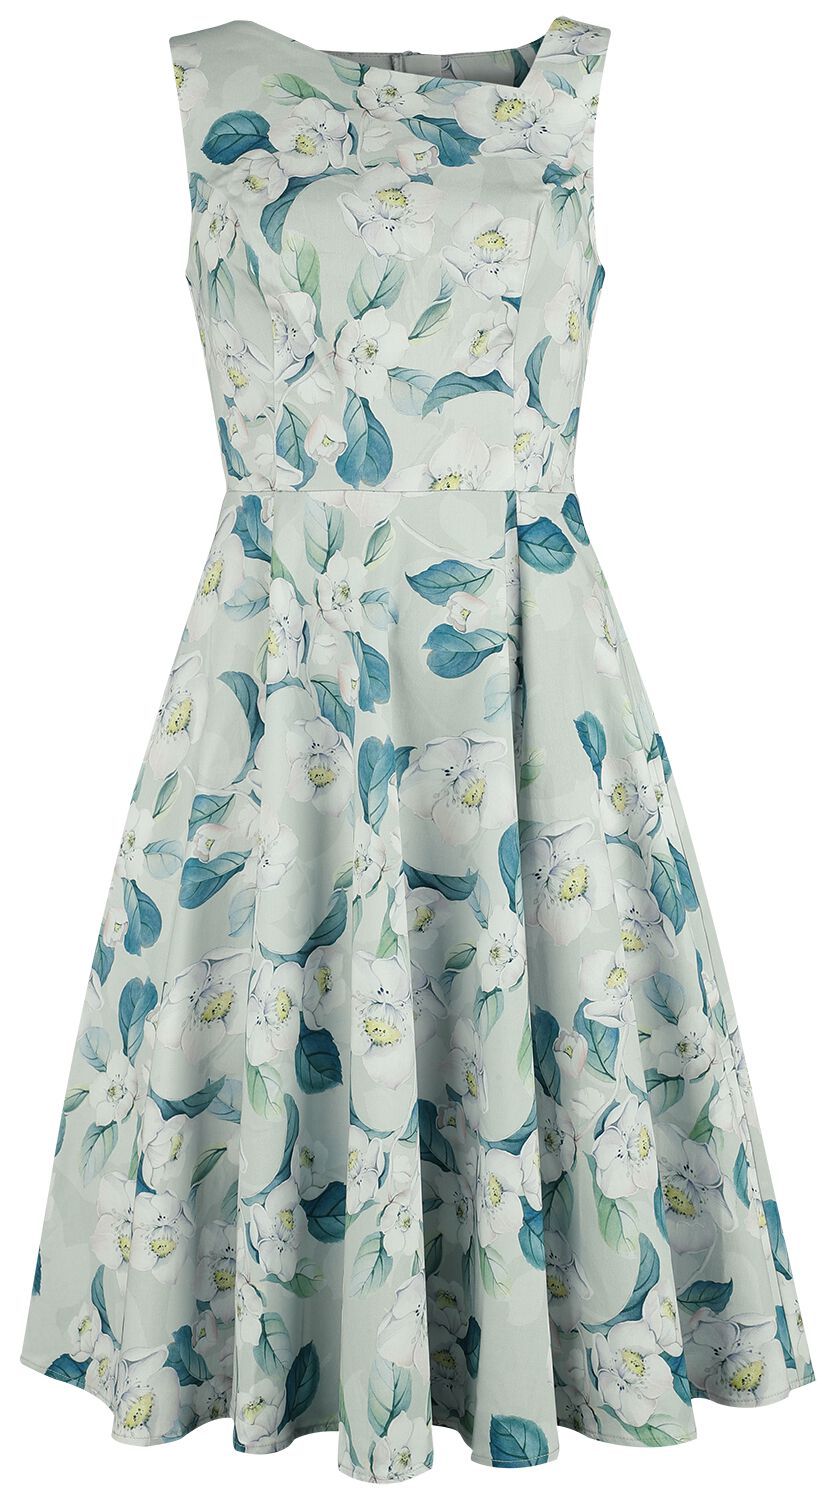 H&R London - Rockabilly Kleid knielang - Rey Floral Swing Dress - XS bis 4XL - für Damen - Größe XXL - grün/weiß